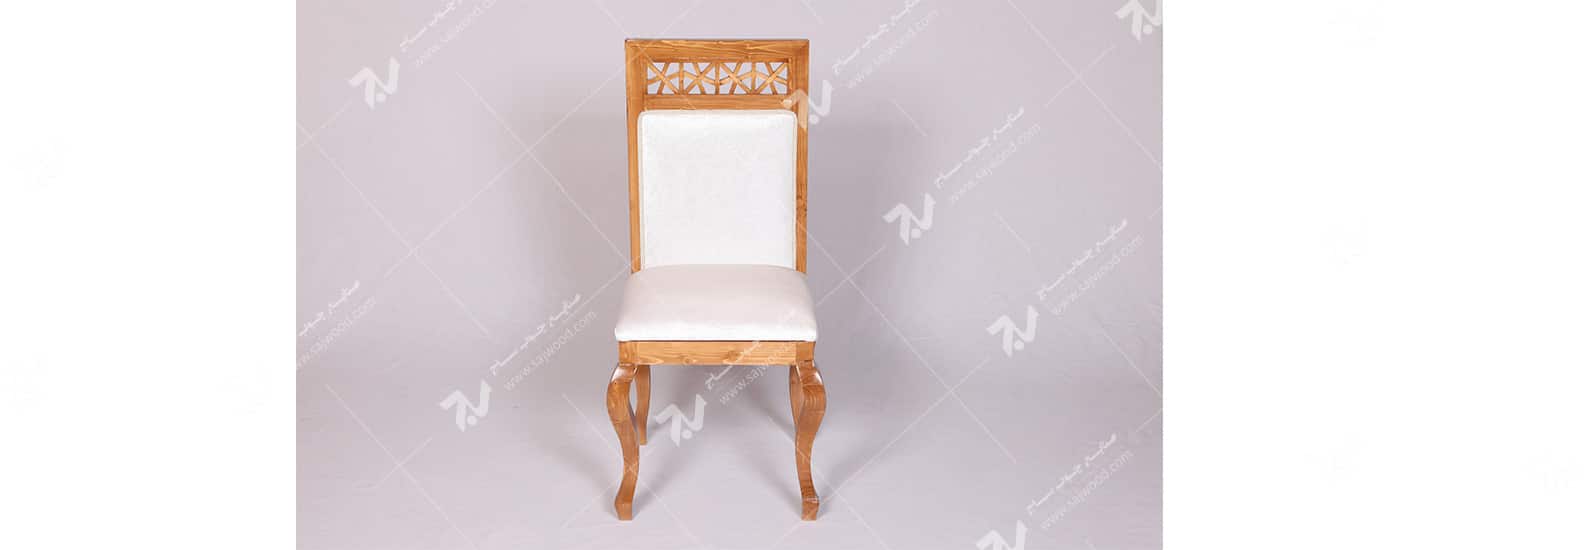 صندلی کلاسیک (غذاخوری ، مبلمان) چوبی سنتی مشبک - سمن کد ۳۰۵